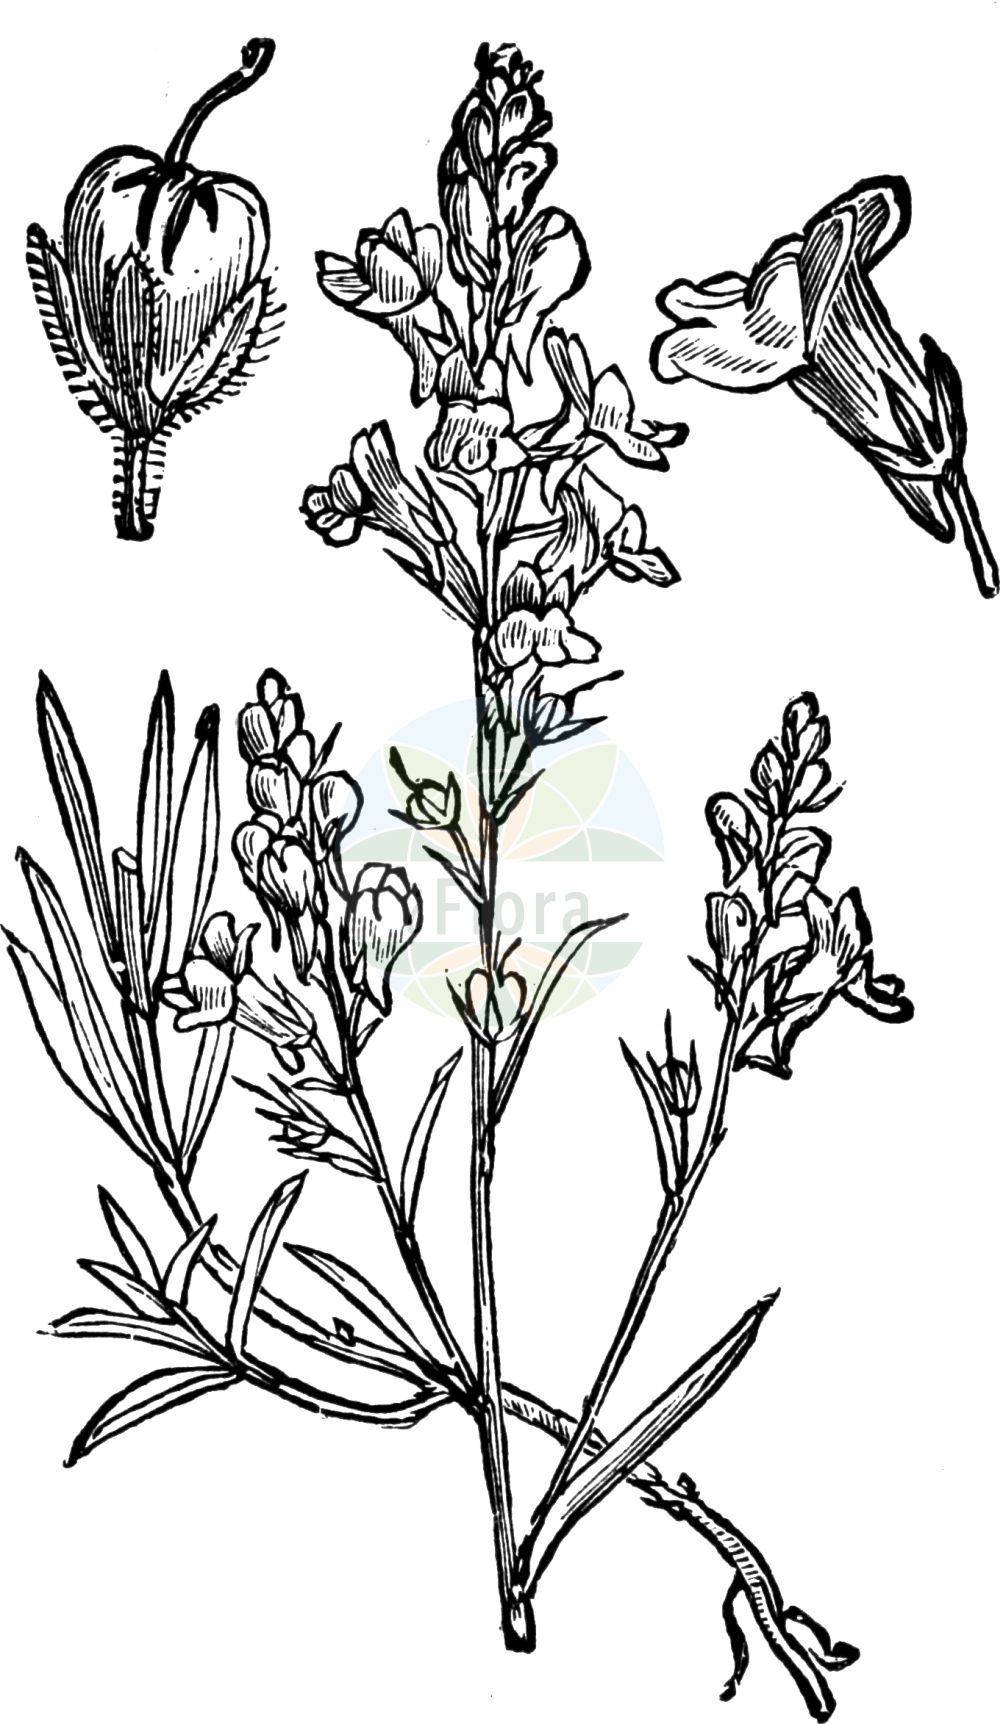 Historische Abbildung von Linaria repens (Gestreiftes Leinkraut - Pale Toadflax). Das Bild zeigt Blatt, Bluete, Frucht und Same. ---- Historical Drawing of Linaria repens (Gestreiftes Leinkraut - Pale Toadflax). The image is showing leaf, flower, fruit and seed.(Linaria repens,Gestreiftes Leinkraut,Pale Toadflax,Antirrhinum repens,Linaria blanca,Linaria monspessulana,Linaria repens,Linaria striata DC. subsp.,Linaria striata,Gestreiftes Leinkraut,Streifen-Leinkraut,Pale Toadflax,Striped Toadflax,Linaria,Leinkraut,Toadflax,Plantaginaceae,Wegerichgewächse,Plantain family,Blatt,Bluete,Frucht,Same,leaf,flower,fruit,seed,Fitch et al. (1880))